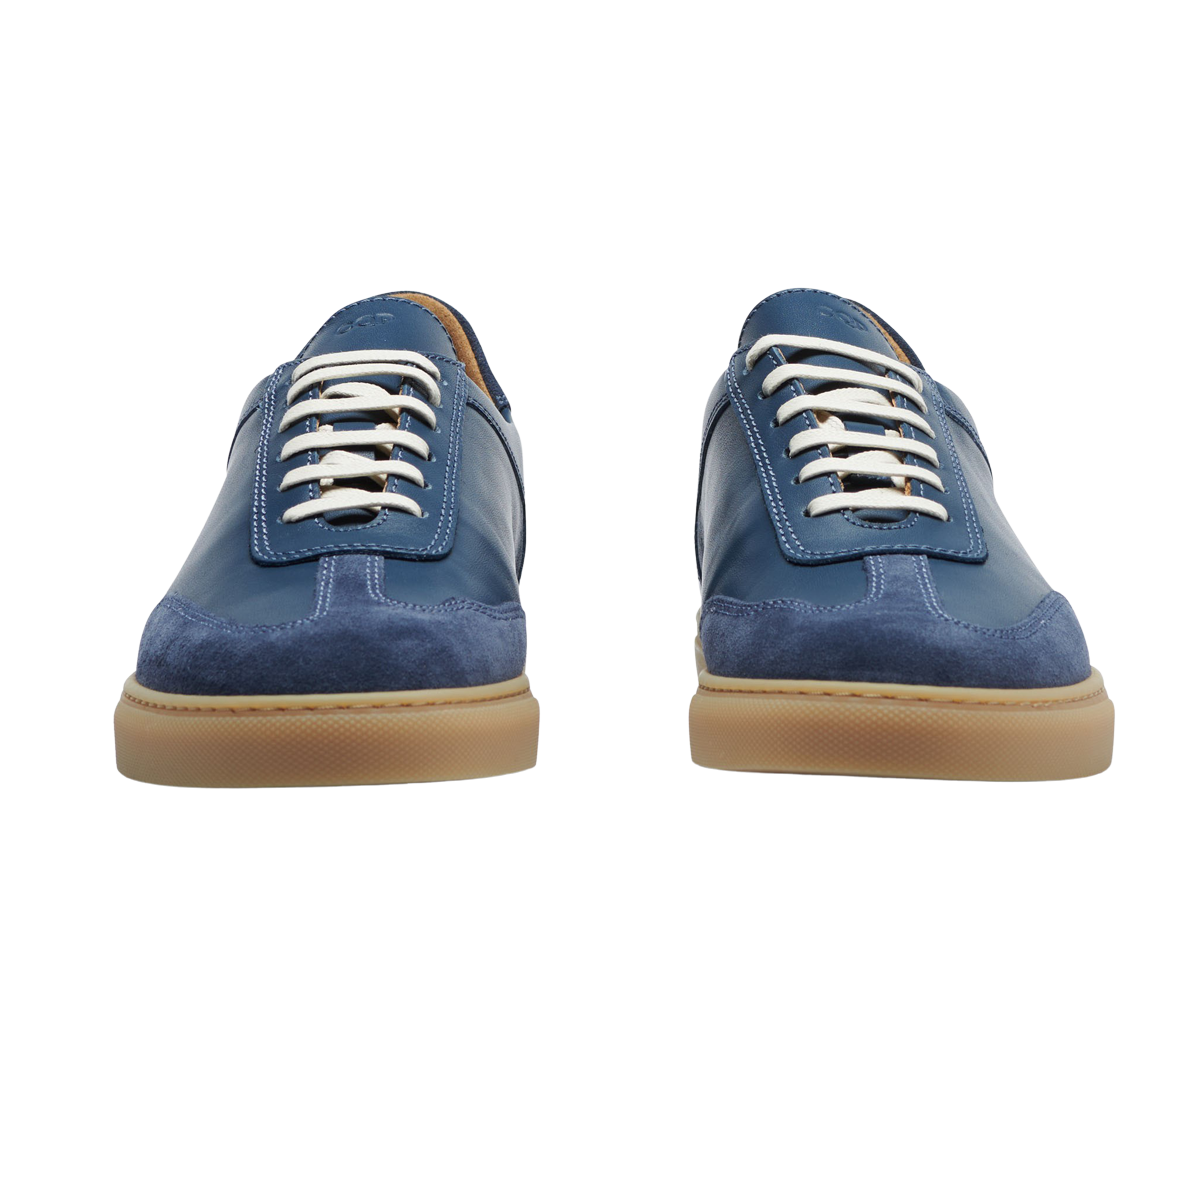 CQP Denim Blue Leather Otium Sneakers Front